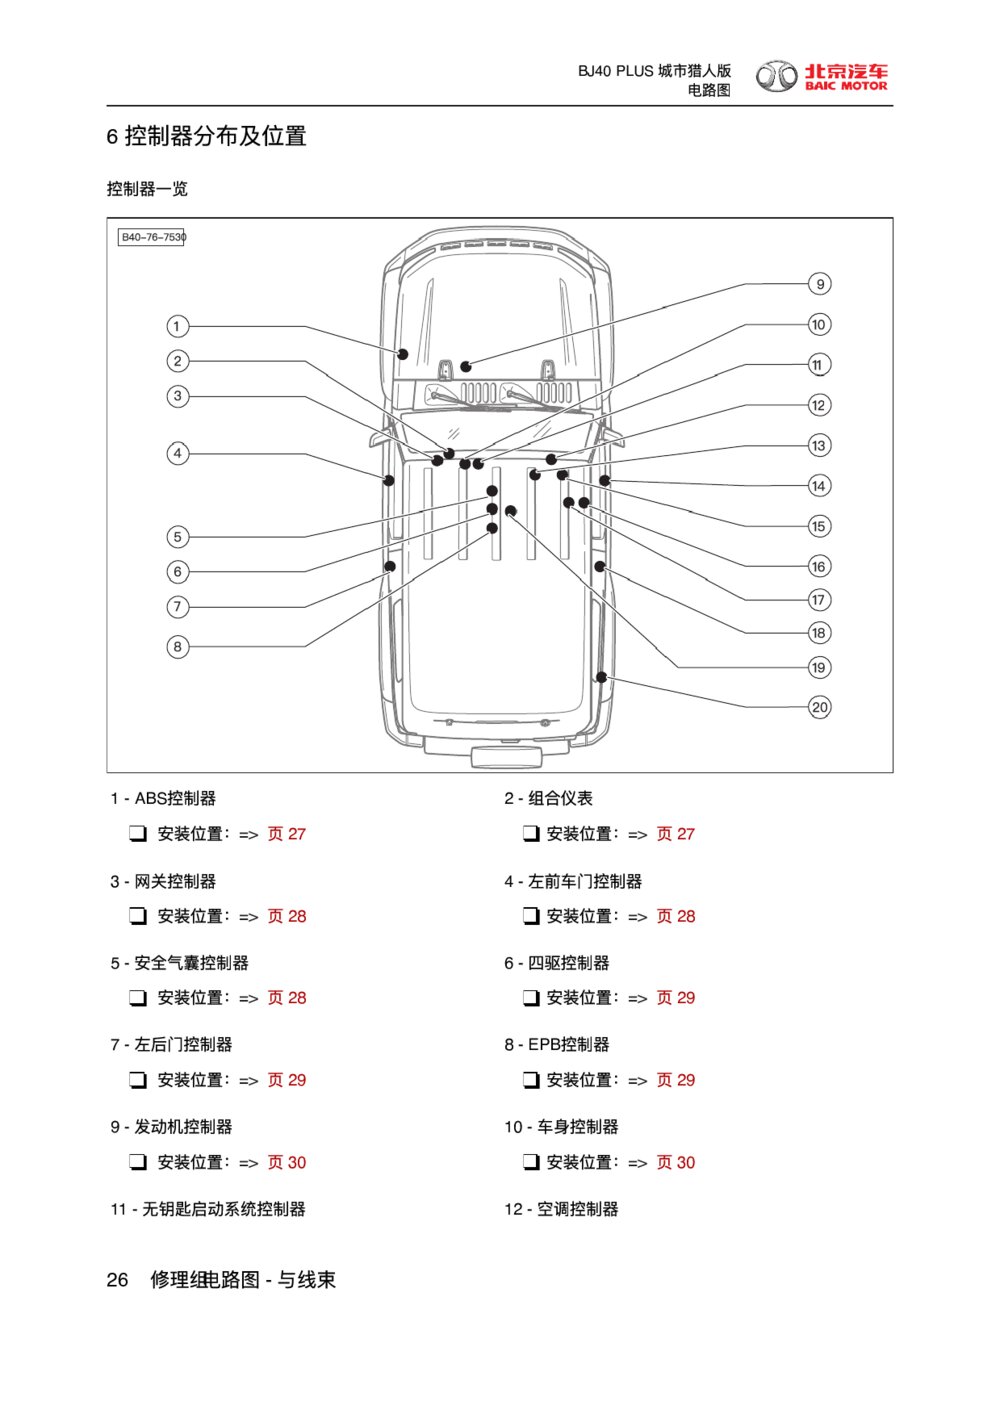 2018款北京BJ40 PLUS控制器分布及位置1